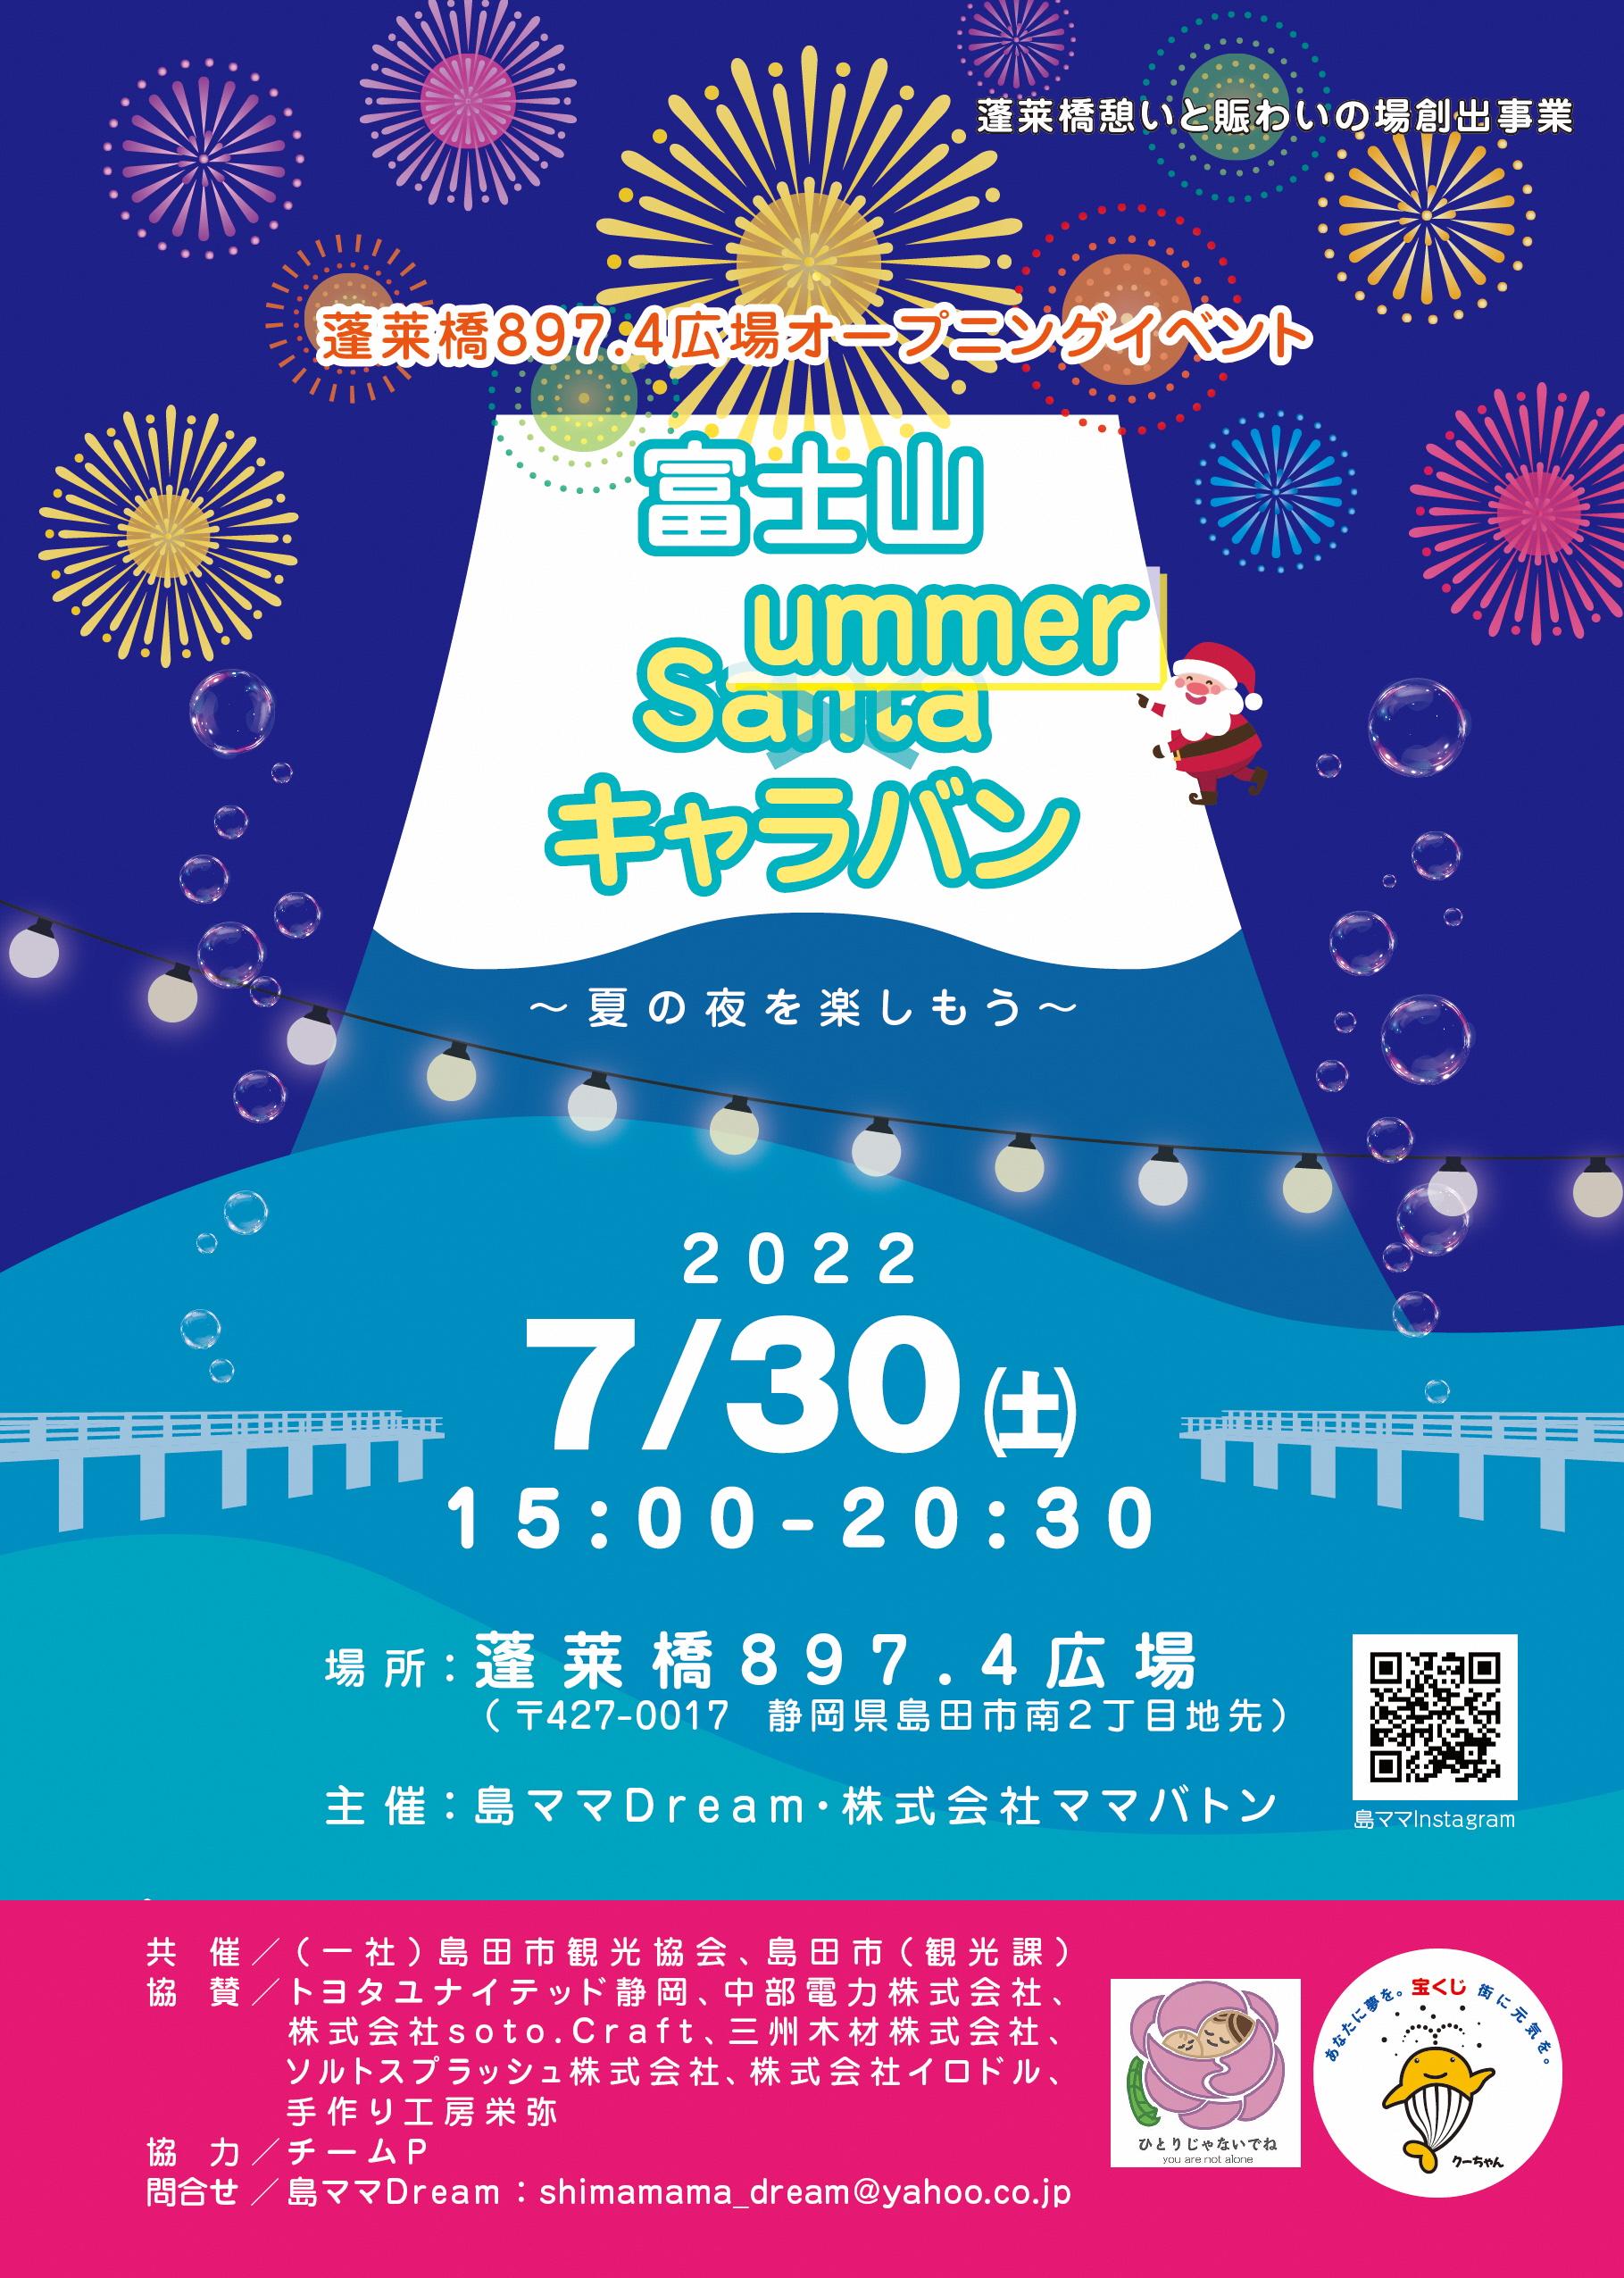 【7/30(土)】蓬萊橋897.4広場オープニングイベント開催！